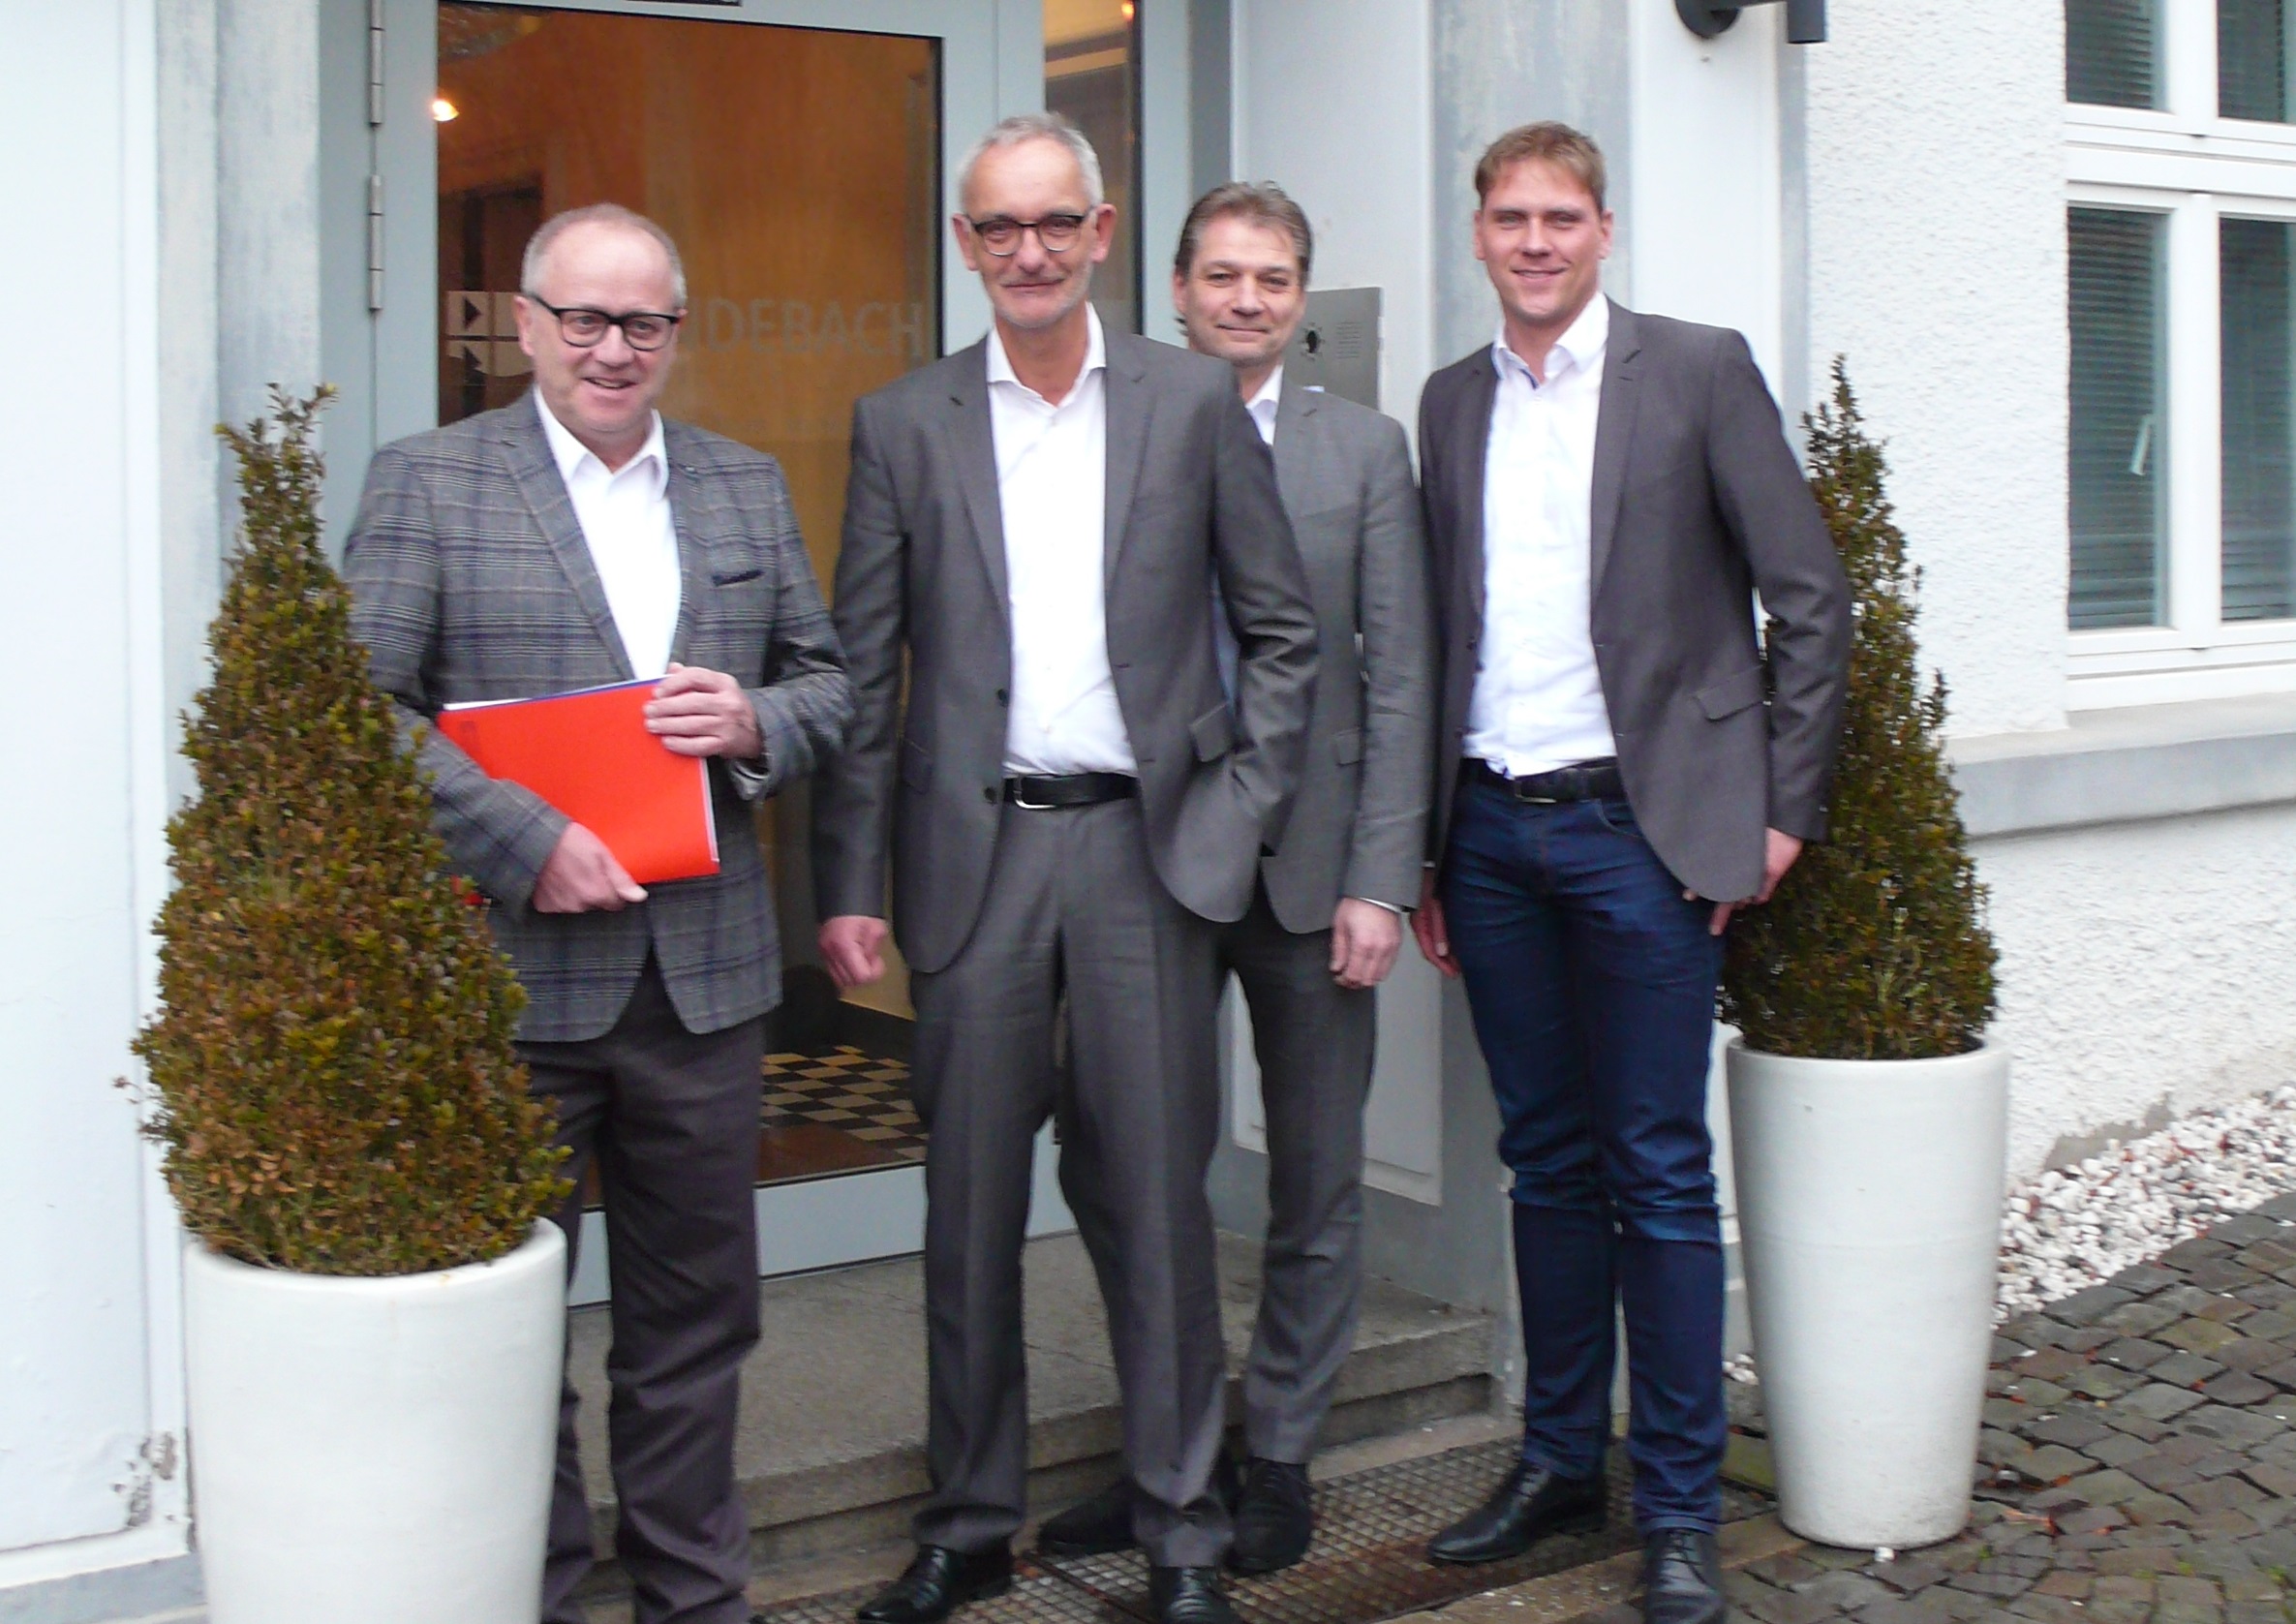 Landrat Dr. Peter Enders (links) und Wirtschaftsfrderer Lars Kober (rechts) tauschten sich mit Markus Brendebach (2. von links) und Tobias Dangendorf aus. (Foto: privat)